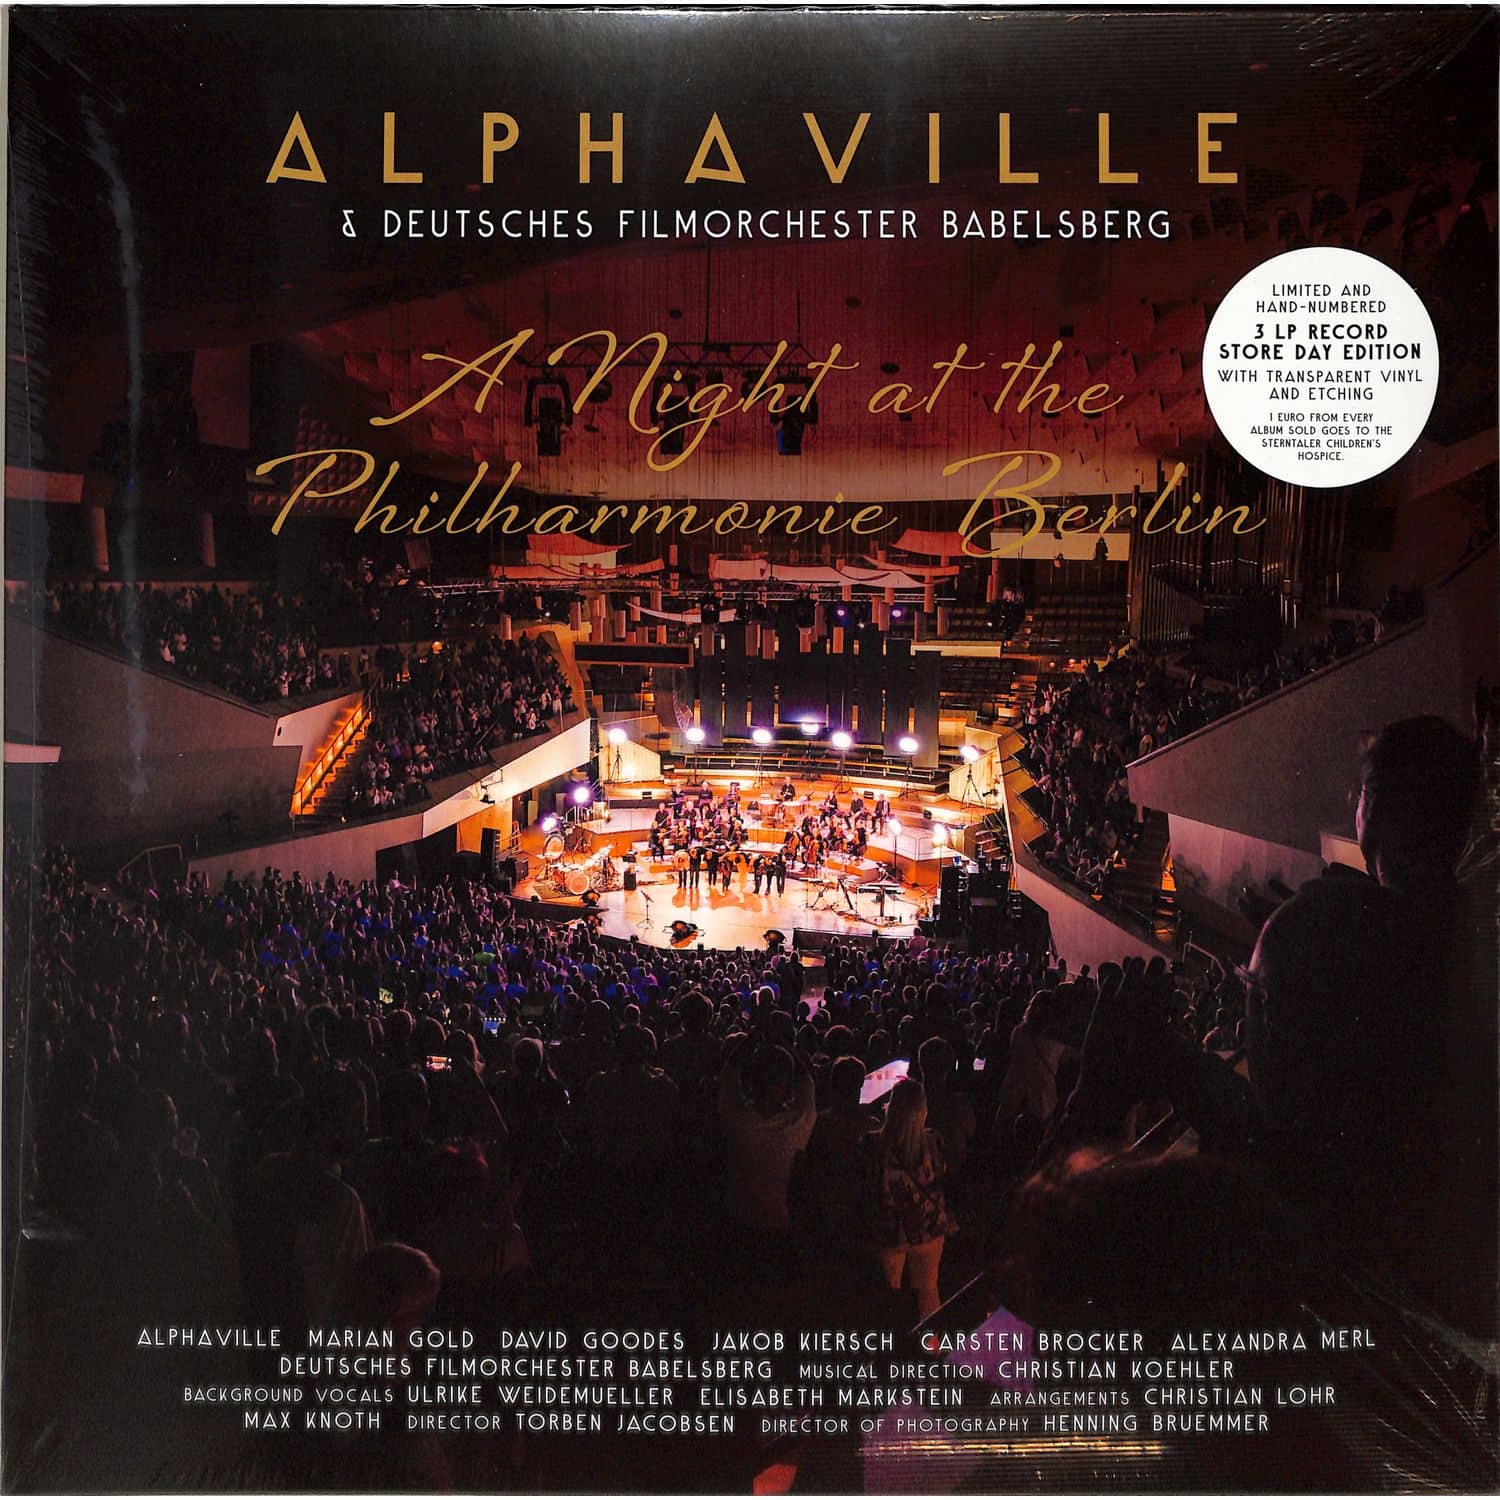 Alphaville & Deutsches Filmorchester Babelsberg - A NIGHT AT THE PHILHARMONIE BERLIN 